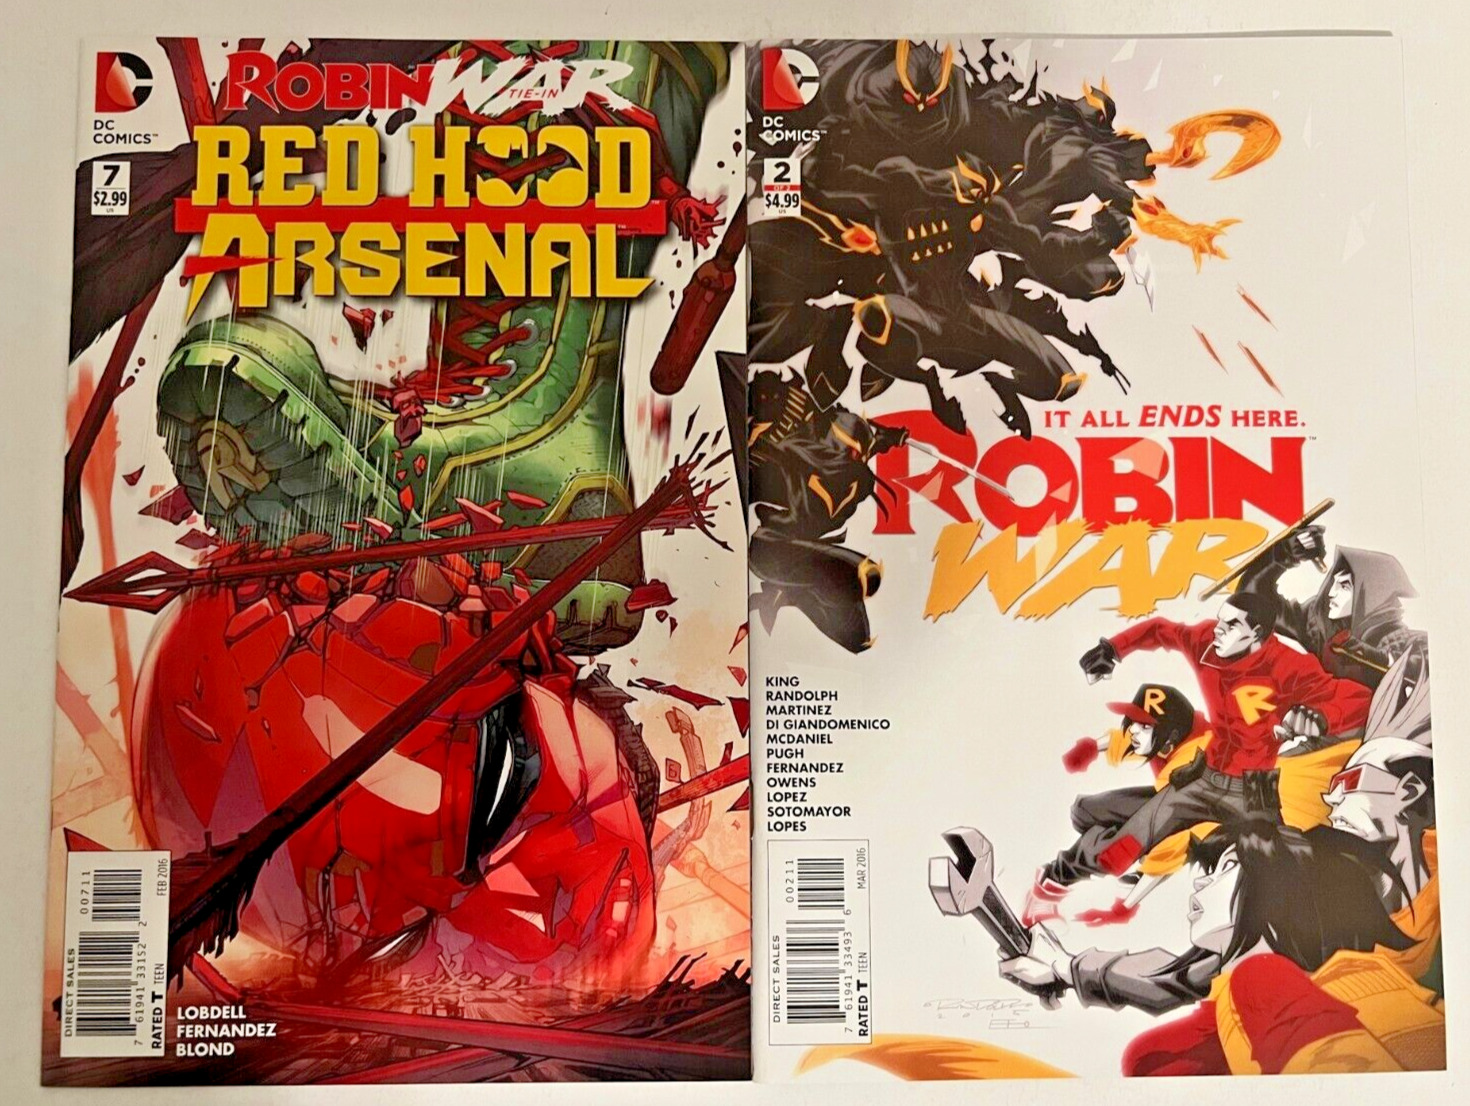 Robin War 2, Robin War Red Hood Arsenal 7 lot of 2 books